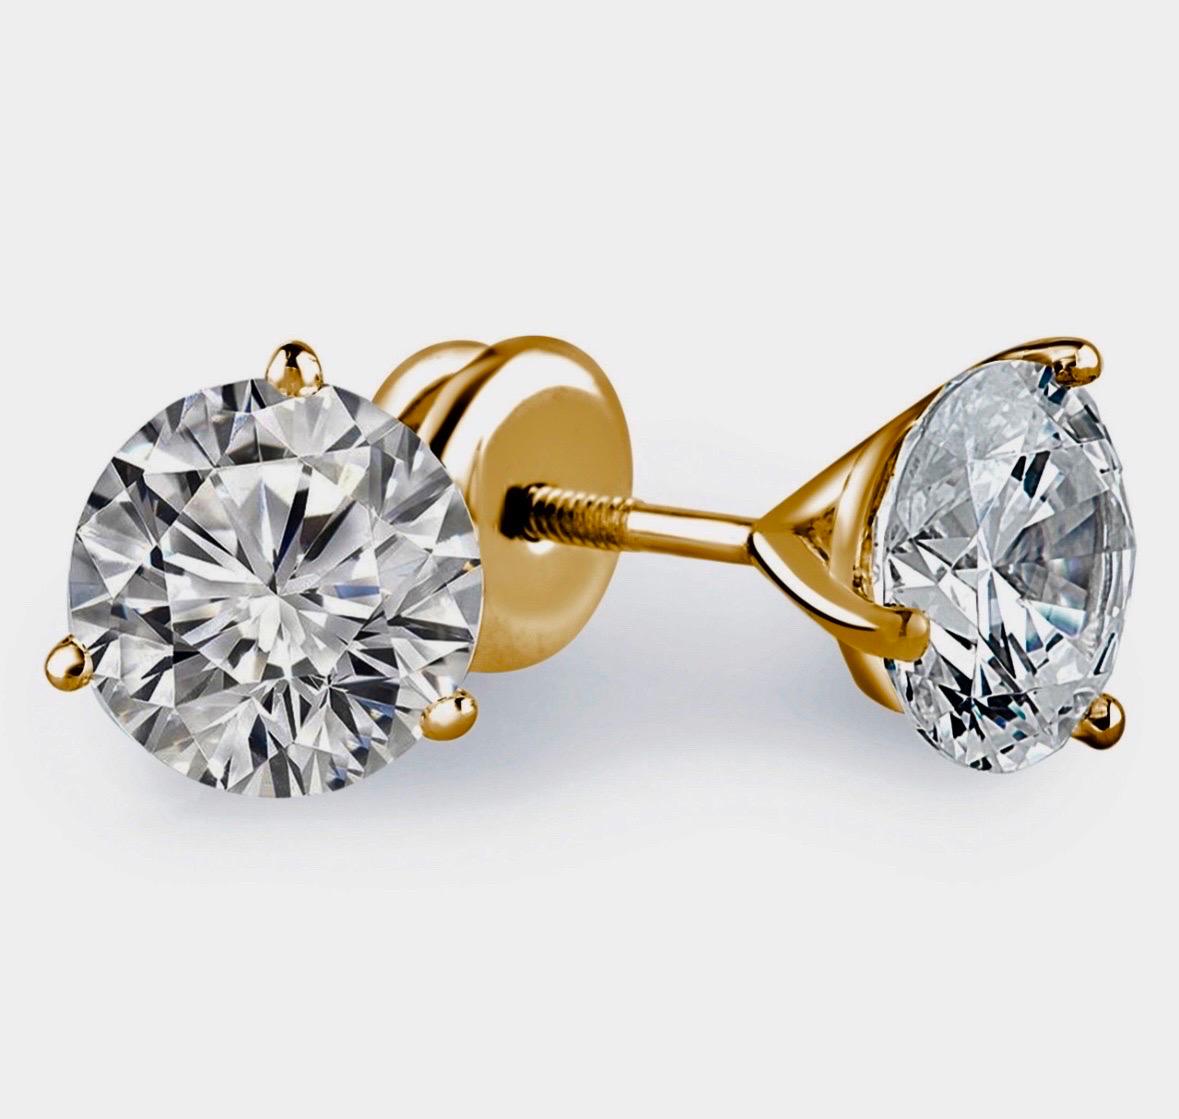 DeKara Designs Klassisch

Metall- 18K Gelbgold, .750.

Steine- 2 GIA-zertifizierte runde Diamanten, L Farbe SI2 Reinheit 1,15 Karat, L Farbe I1 Reinheit 1,16 Karat. Beide Diamanten sind mit einer Laserbeschriftung versehen.

Ohrringe werden mit